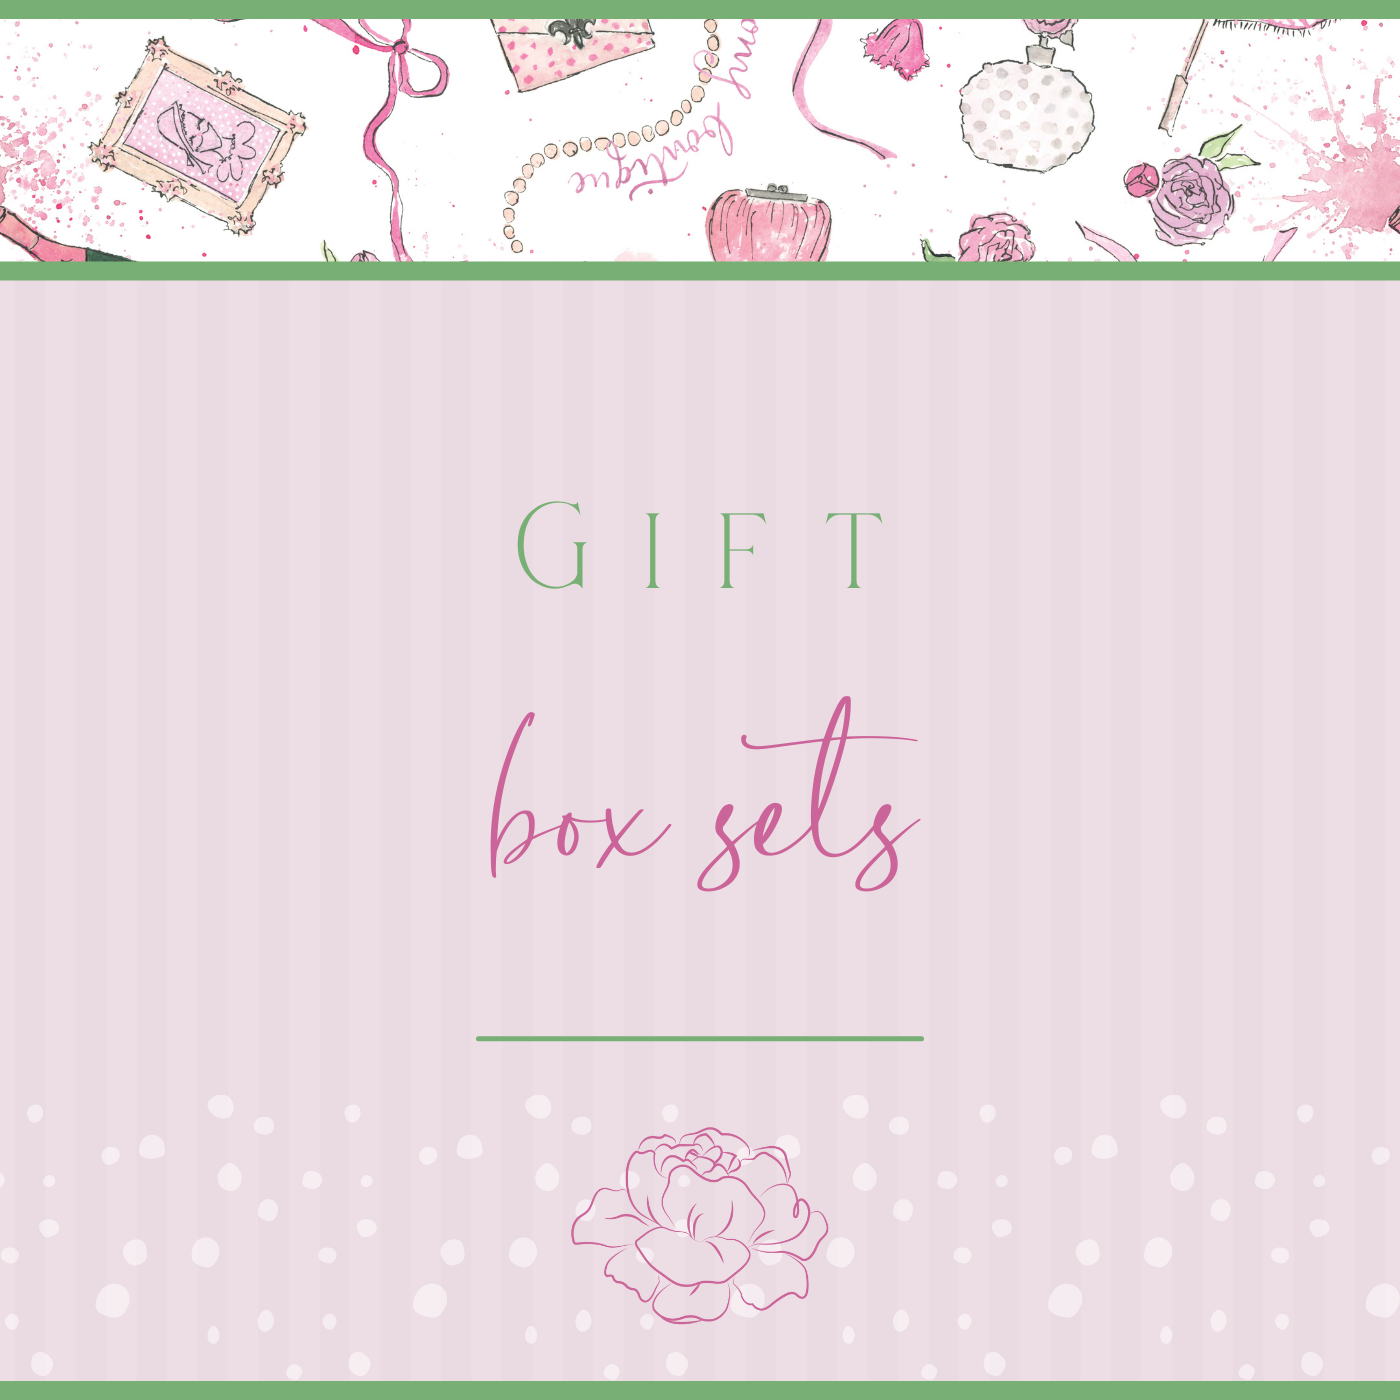 Gift Box Sets